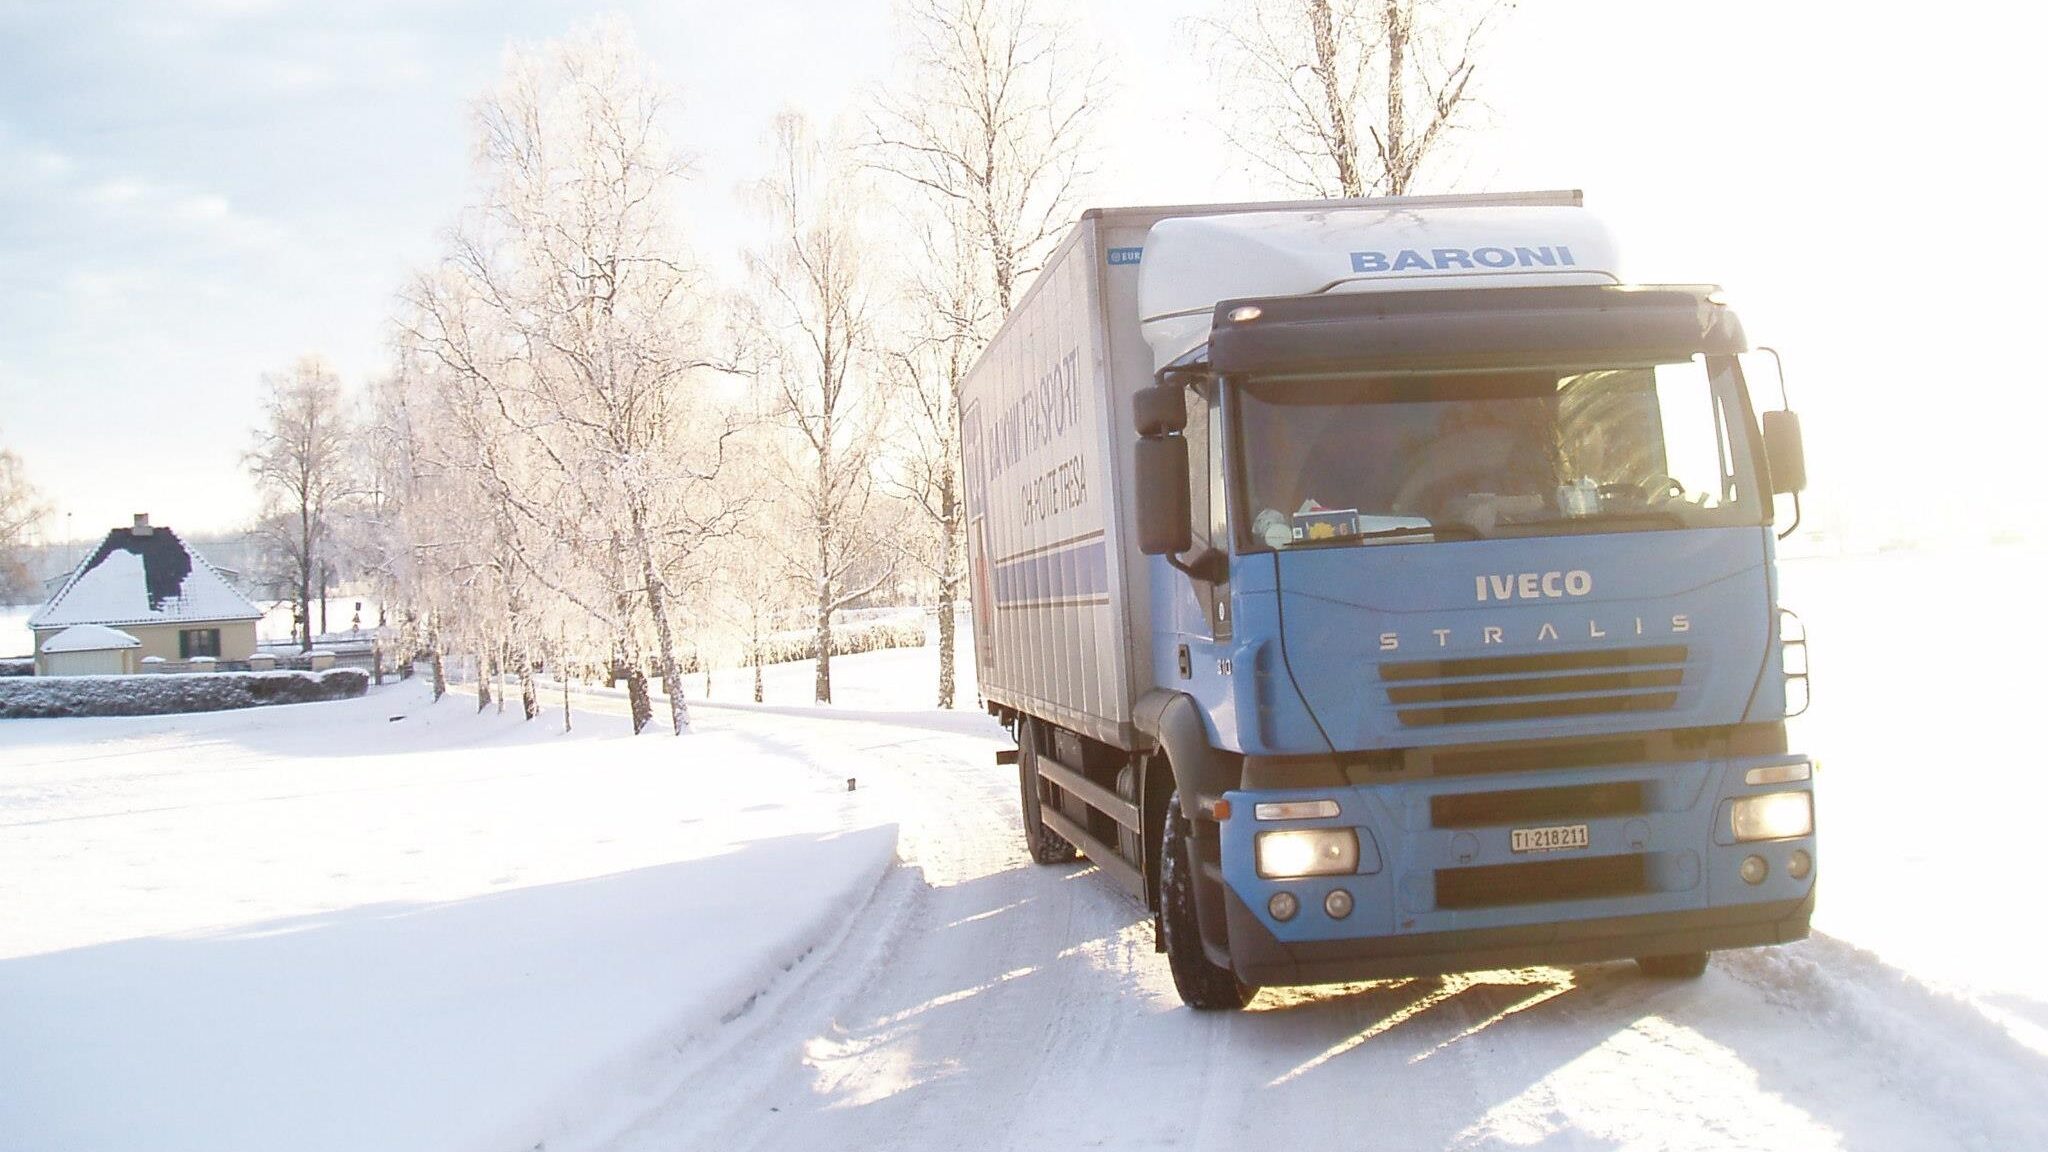 Ein LKW auf einer schneebedeckten Straße, der den LKW Transport und den internationalen Transportdienst darstellt, der von der Firma Baroni angeboten wird